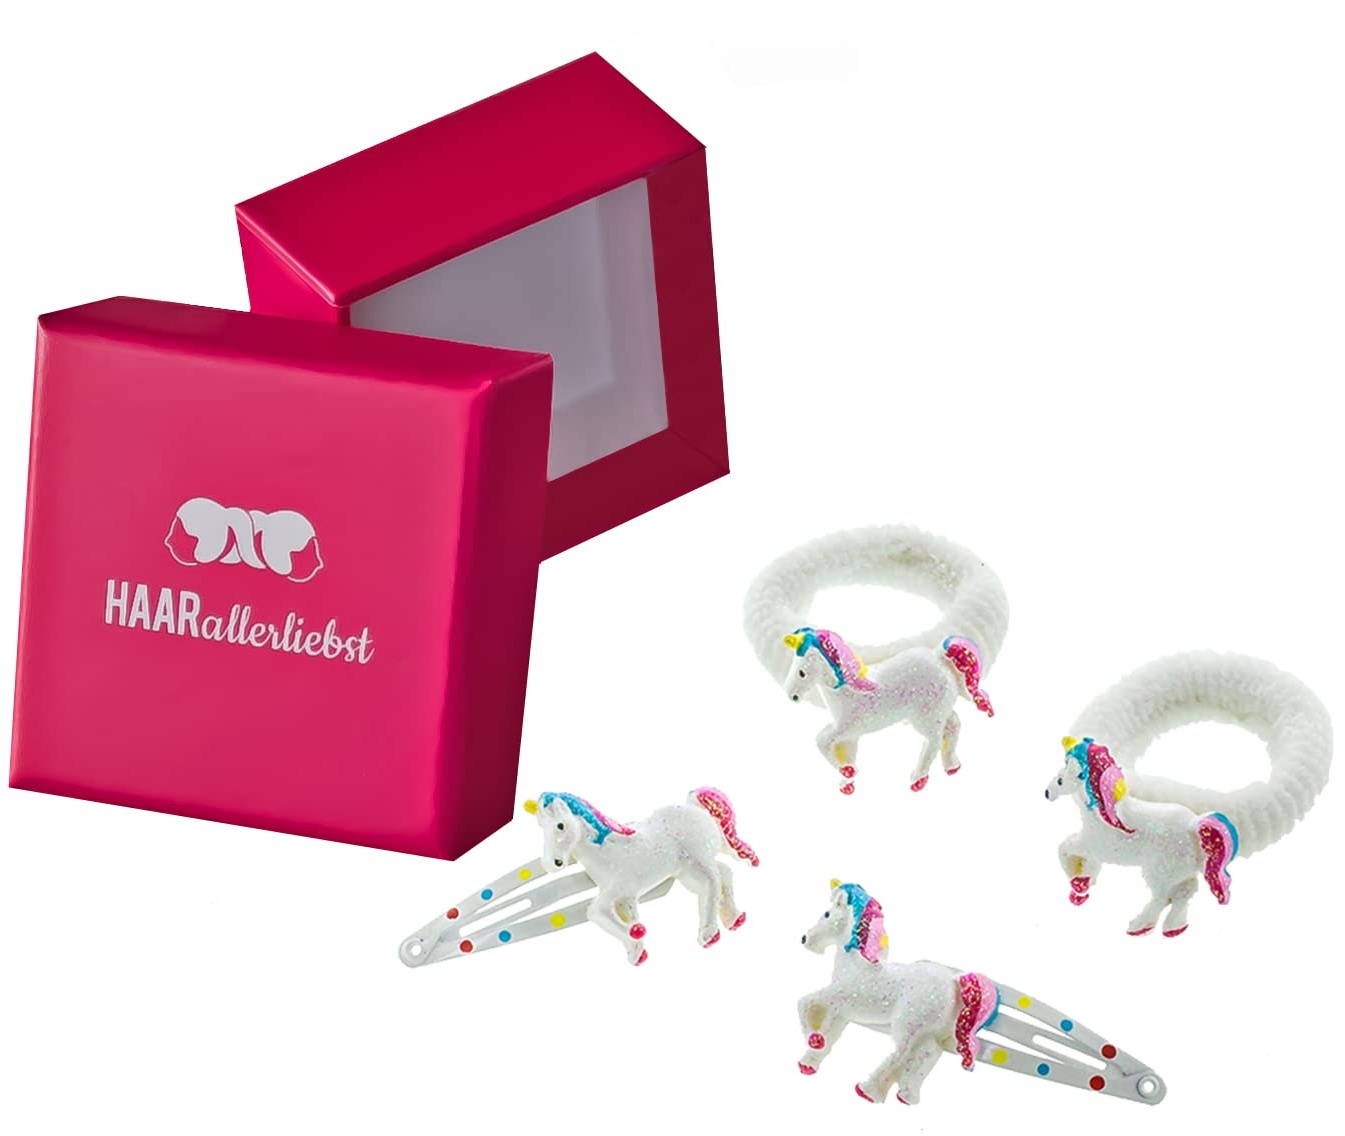 HAARallerliebst Haarschmuck Set (4 teilig | Einhörner | Glitzer Weiss) für Mädchen inkl. Schachtel zur Aufbewahrung (Schachtelfarbe: pink)